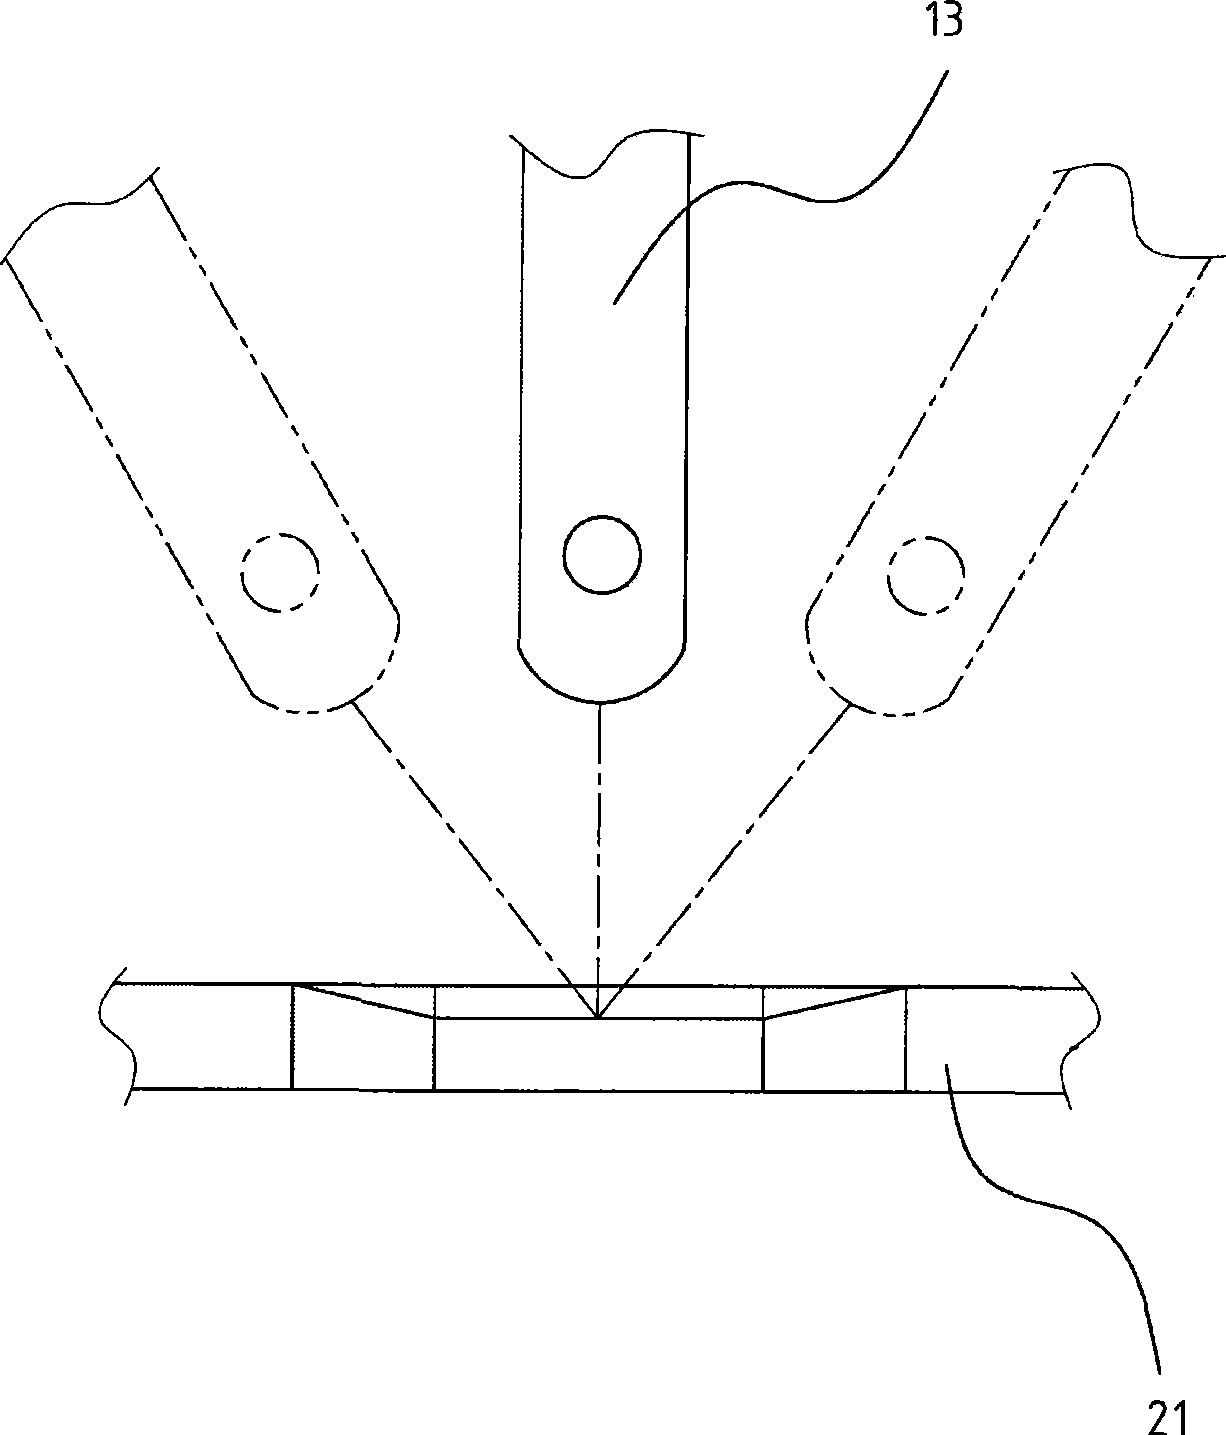 Plug structure